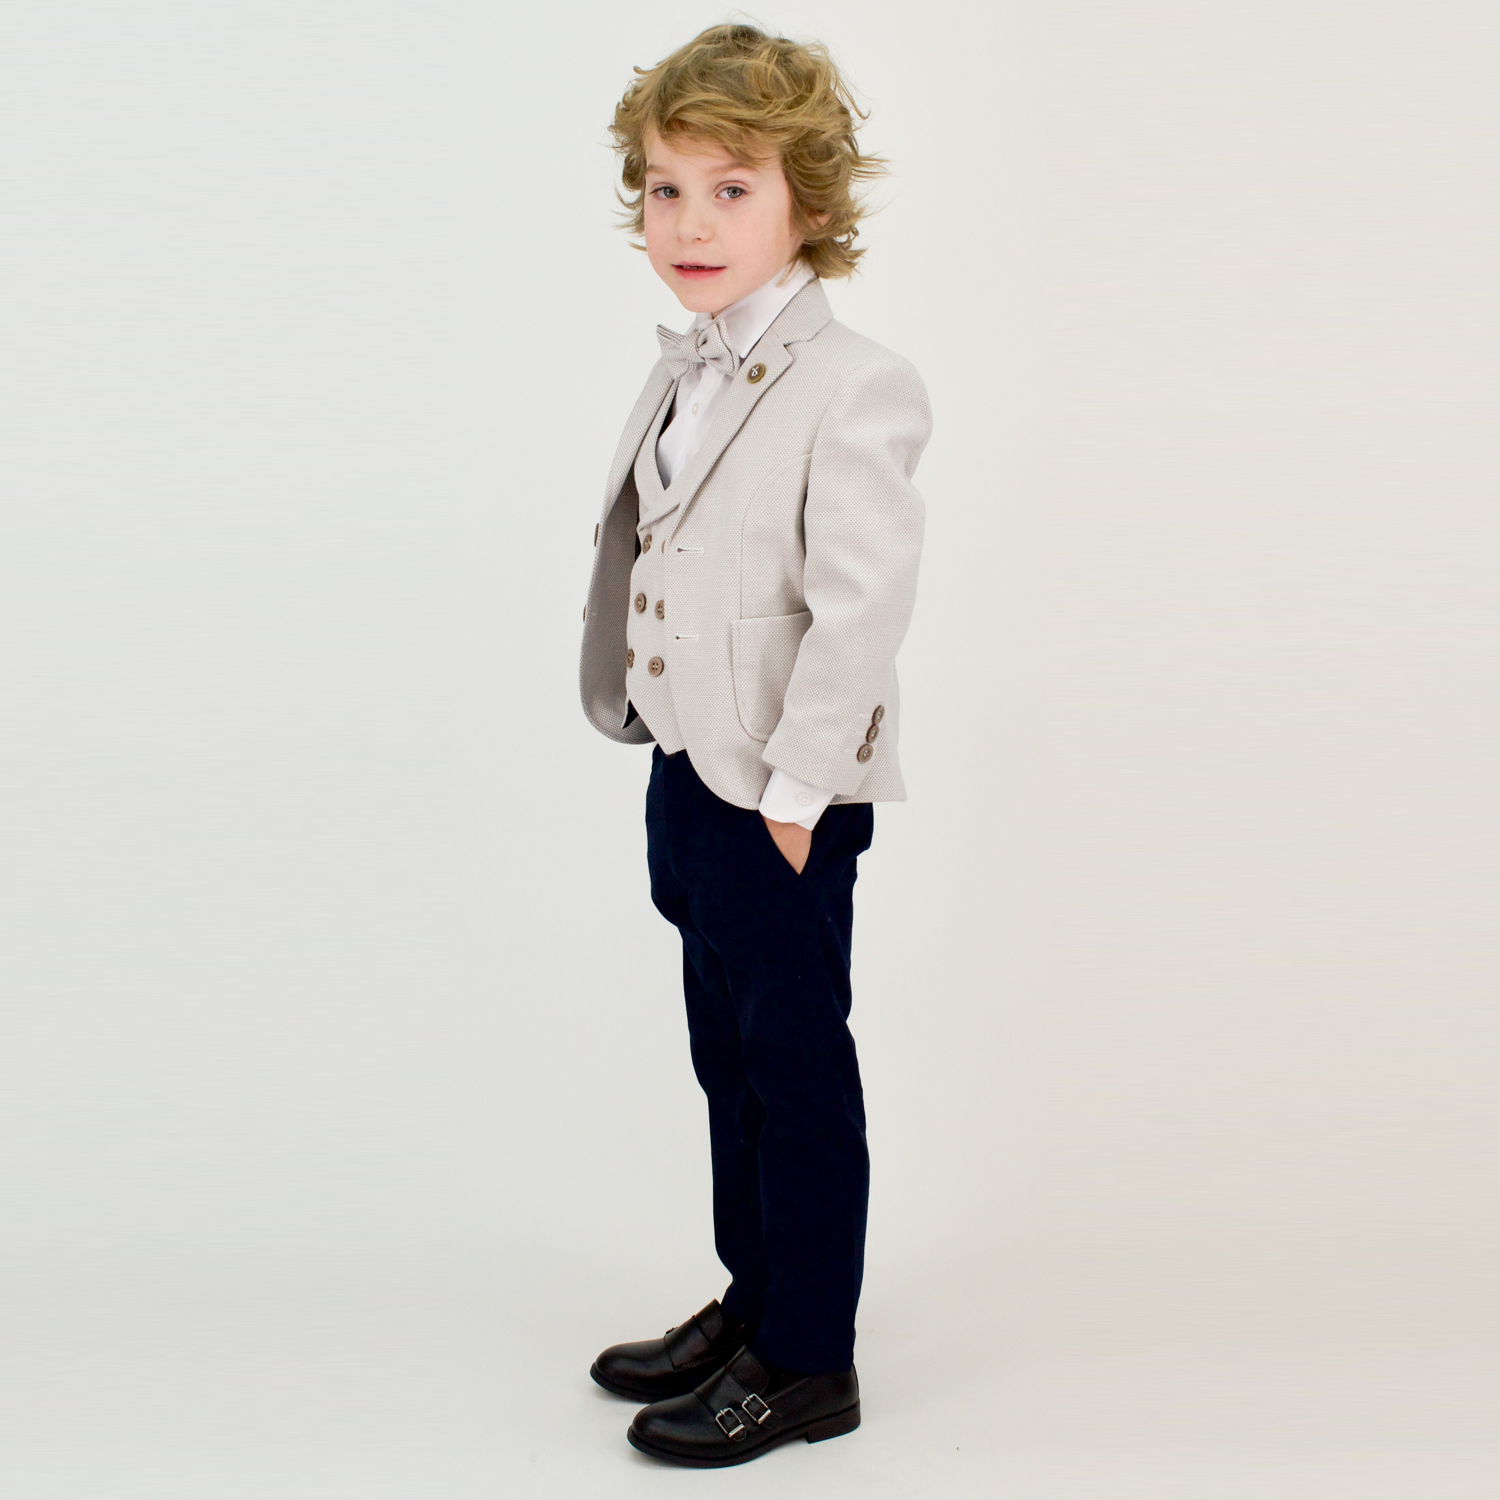 Young Gentleman Boys Formal Suit